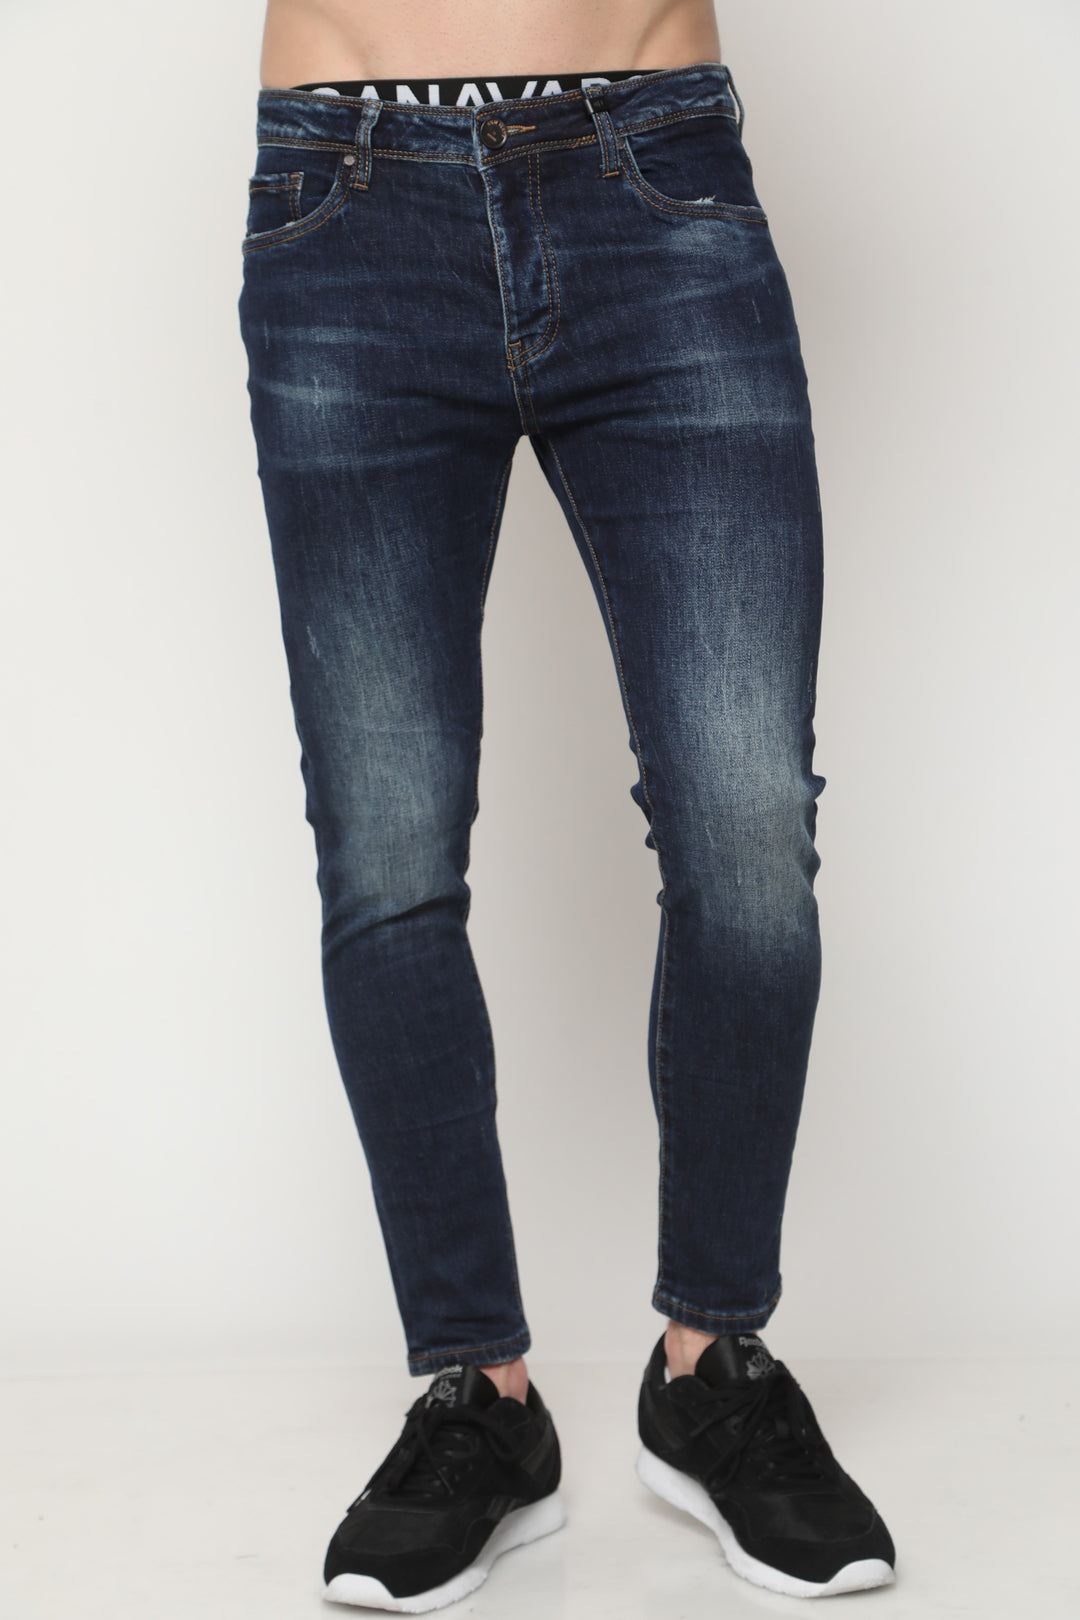 745 ג'ינס סופר סקיני - canavaro jeans